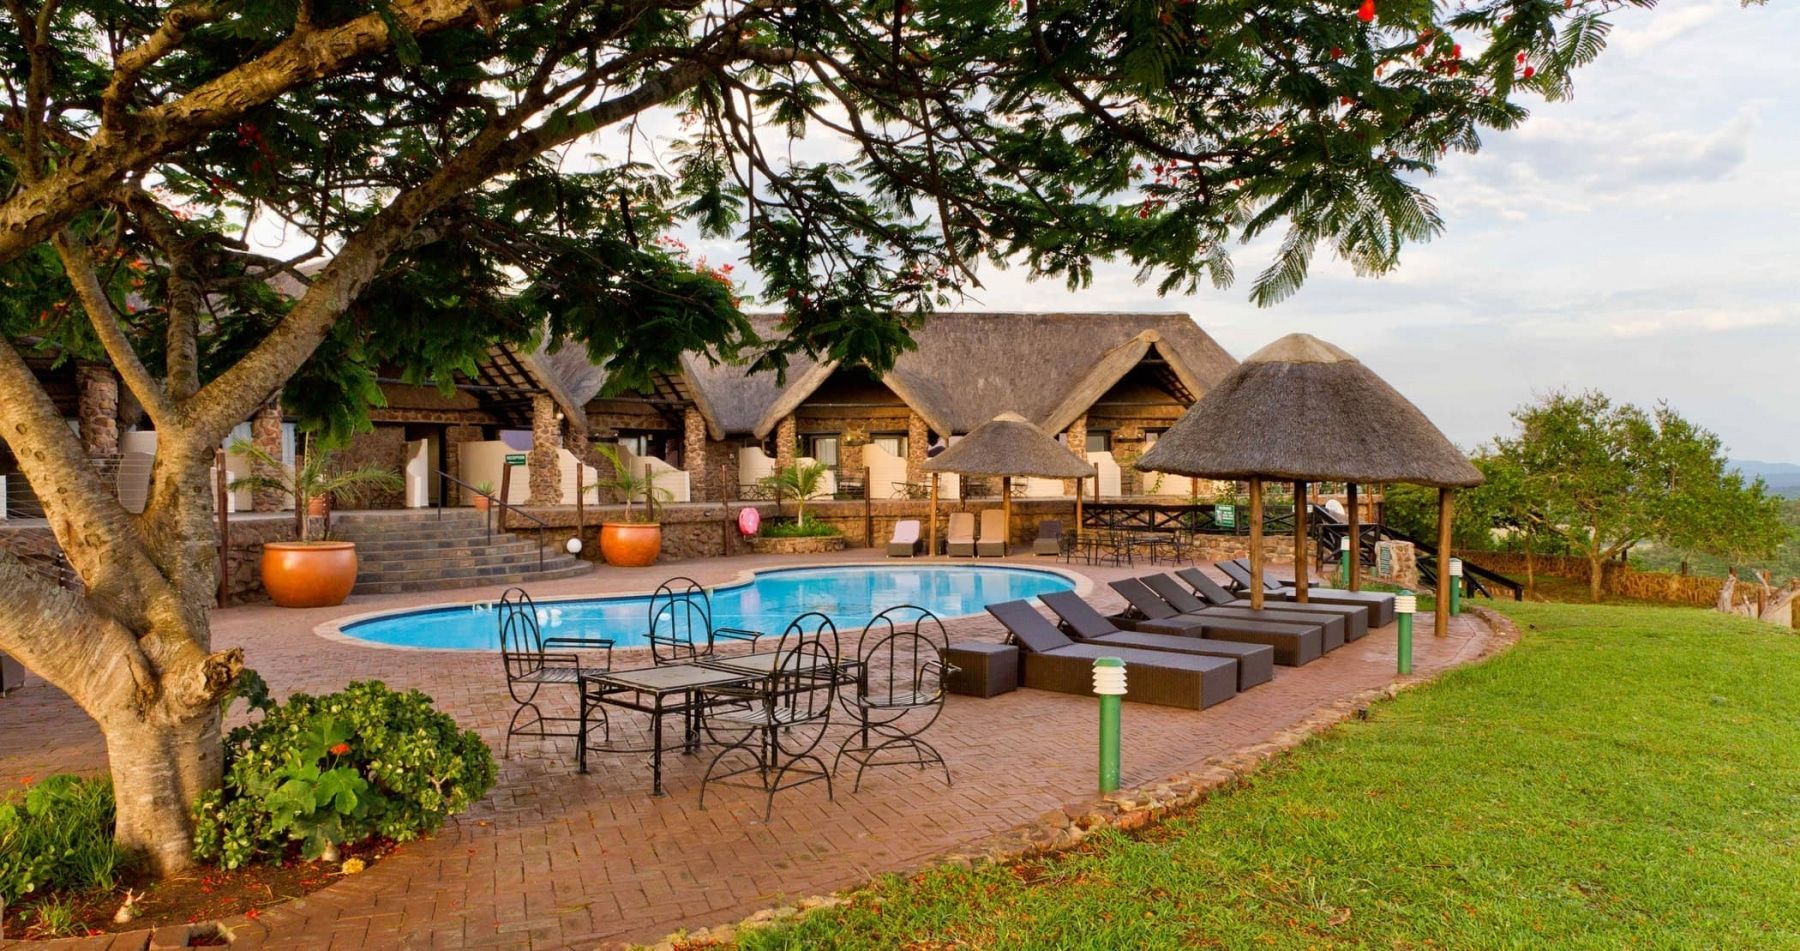 zulu-nyala-safari-game-lodge-facilities-pool-04